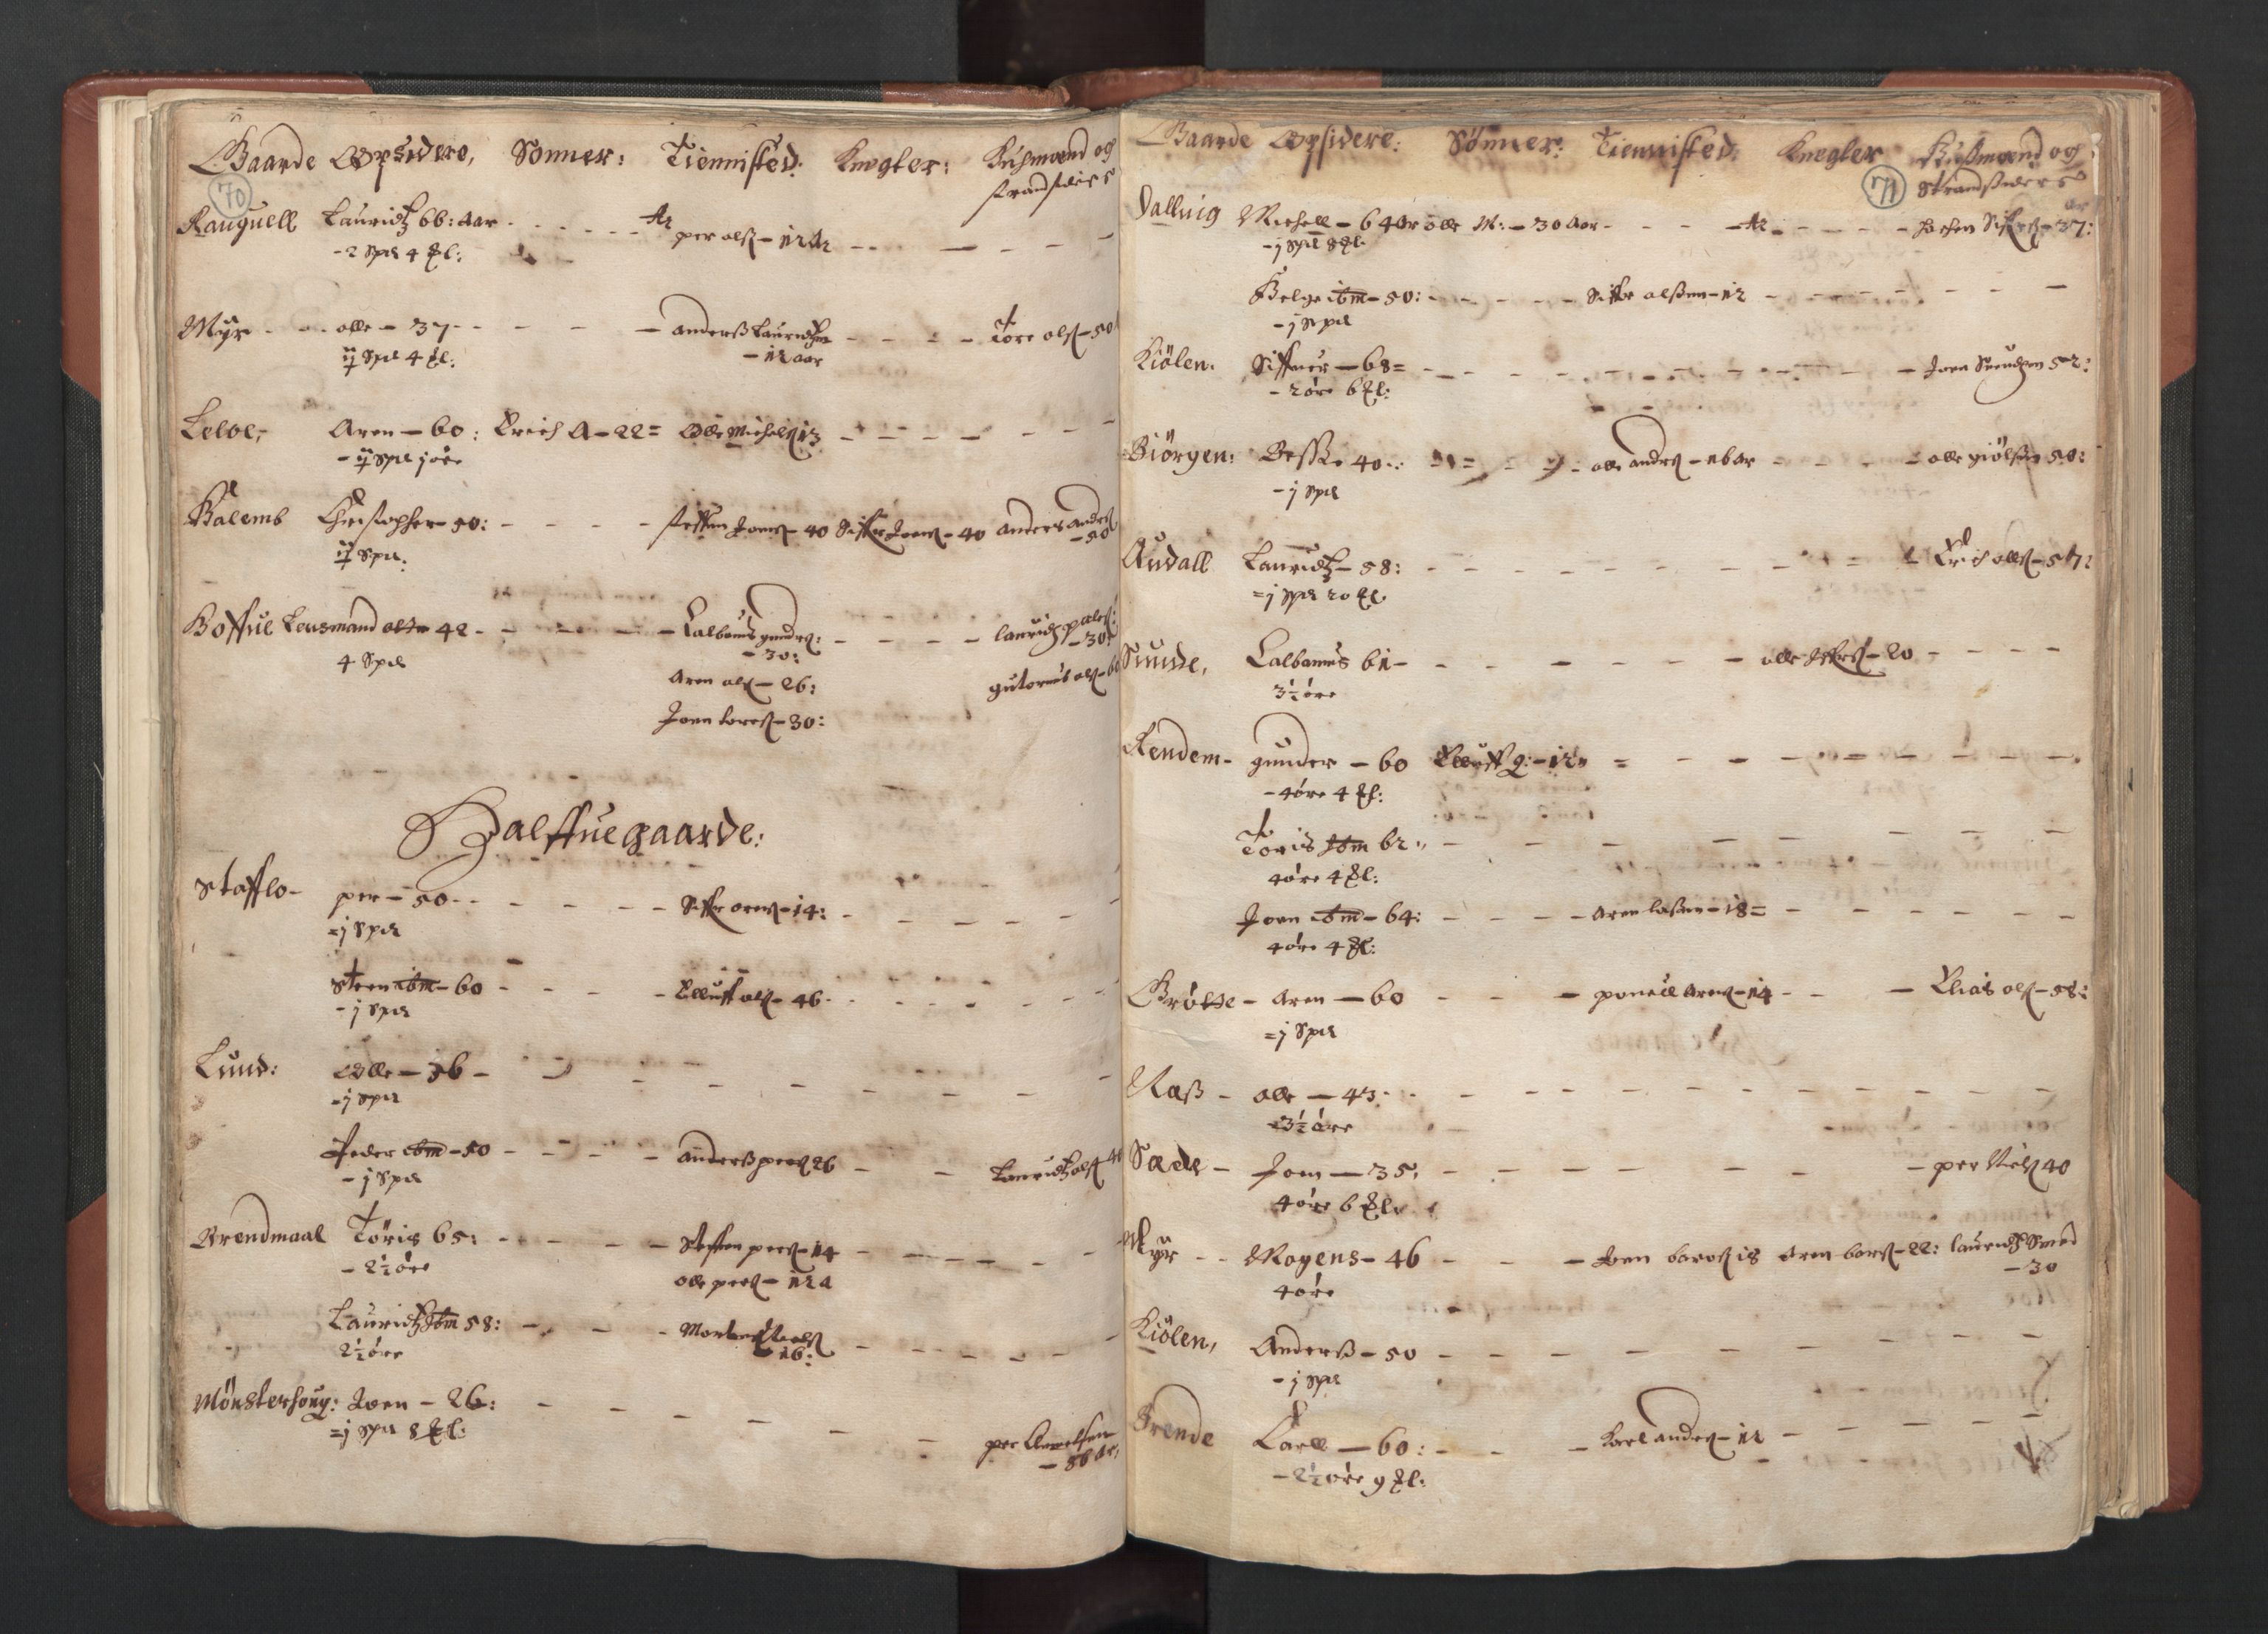 RA, Bailiff's Census 1664-1666, no. 19: Fosen fogderi, Inderøy fogderi, Selbu fogderi, Namdal fogderi and Stjørdal fogderi, 1664-1665, p. 70-71